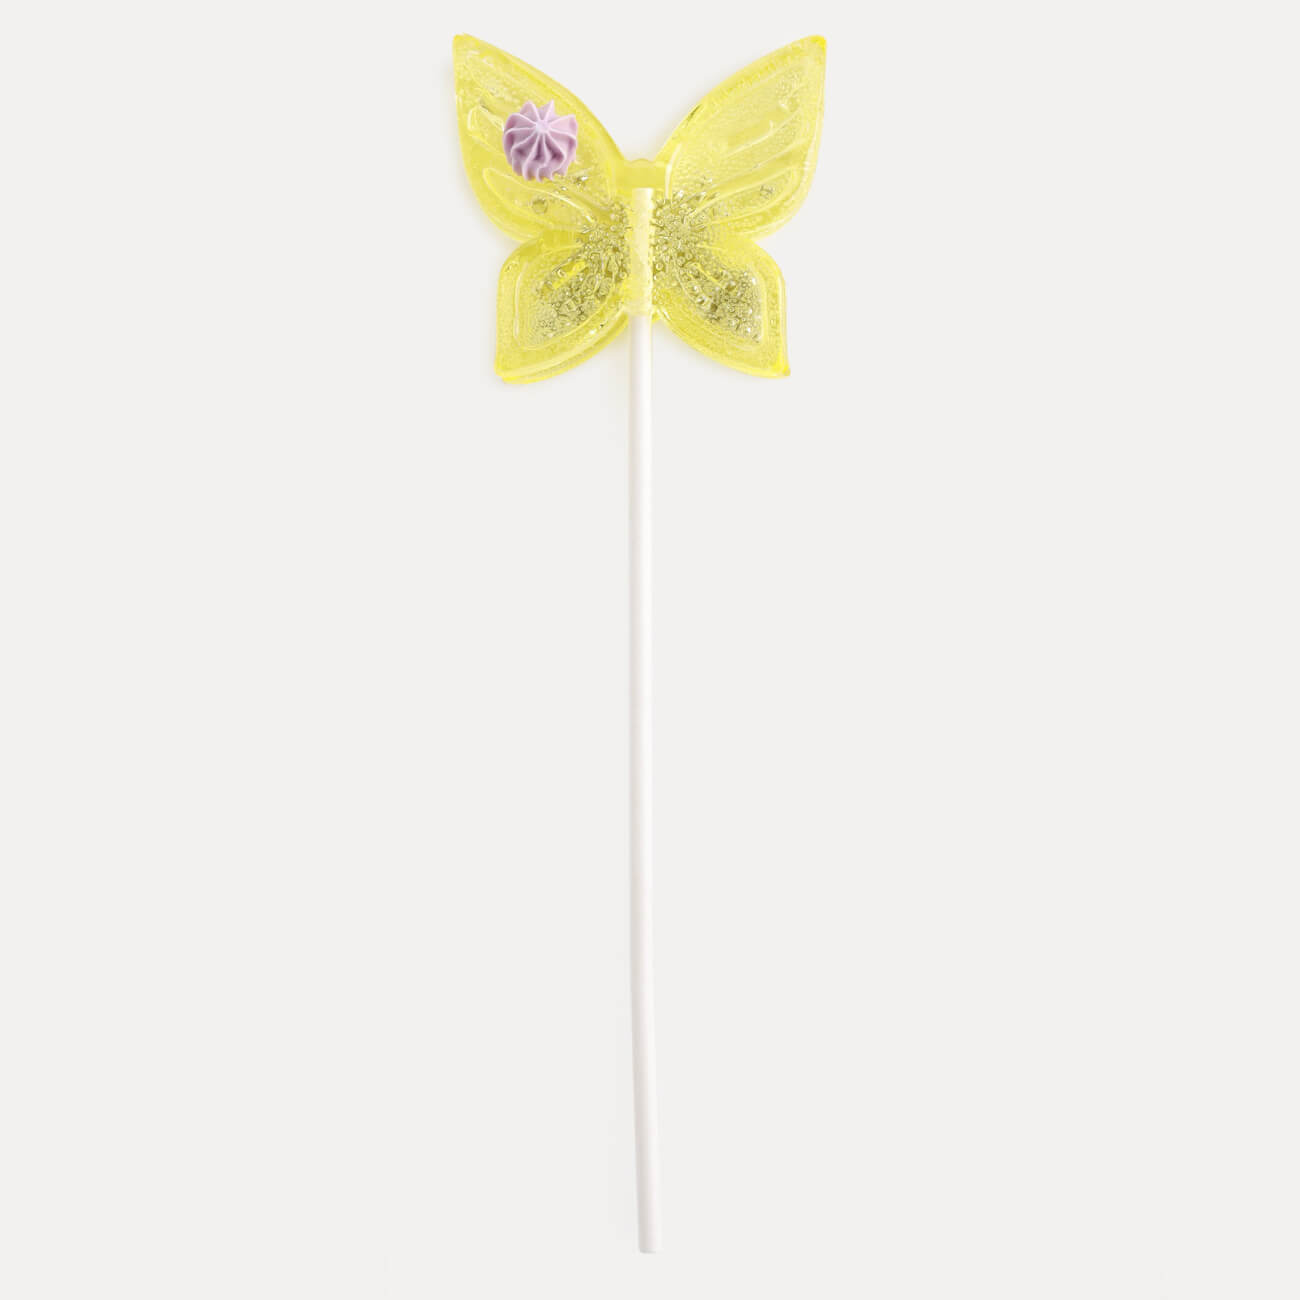 Леденец, 30 гр, погремушка, на палочке, изомальт, желтый, Бабочка, Butterfly погремушка